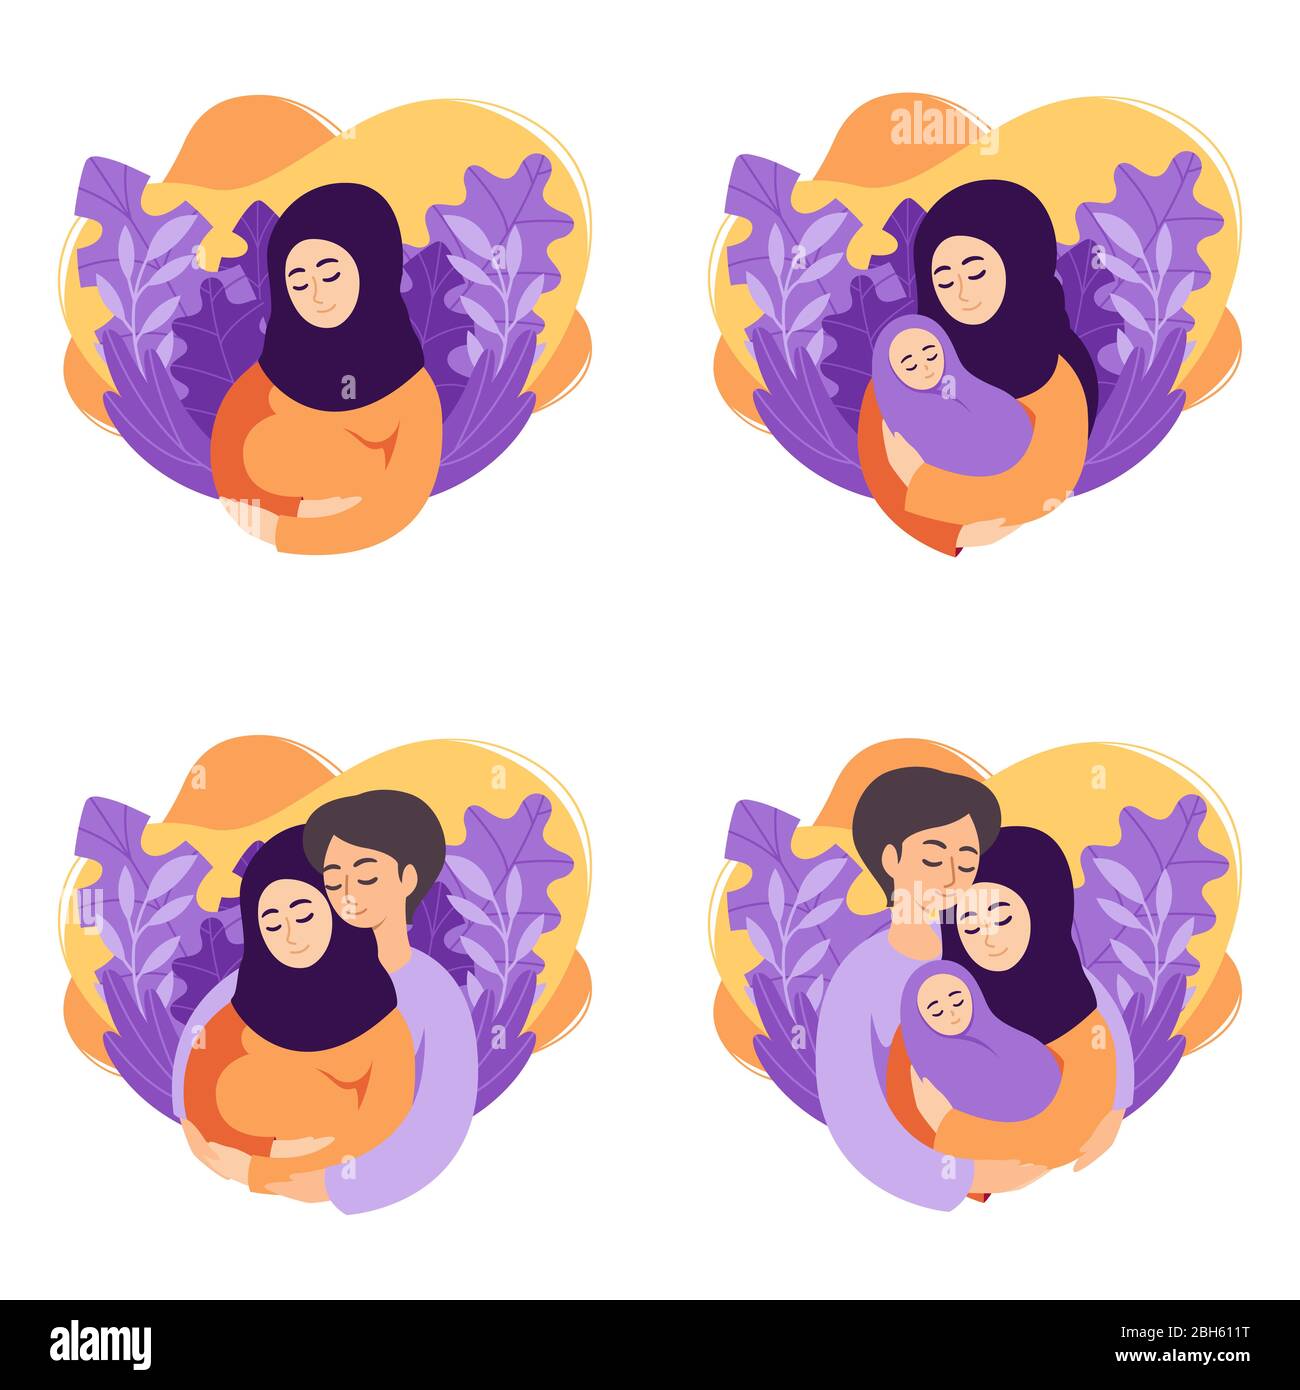 Schwangerschaft und Elternschaft Konzept Vektorgrafiken. Set von Szenen muslimisch schwanger Frau, Mutter hält neugeboren, zukünftige Eltern erwarten Baby, Stock Vektor